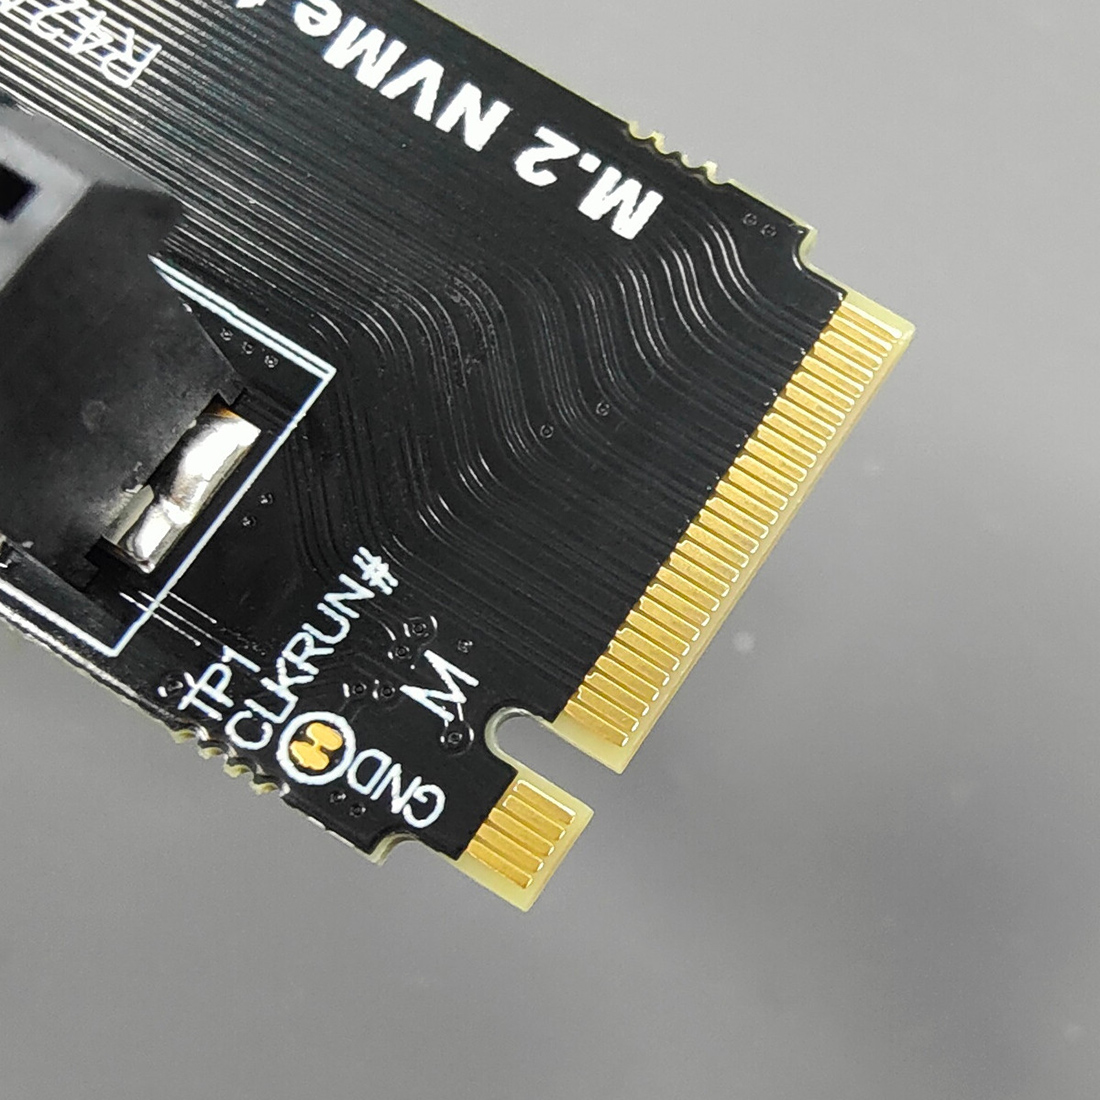 JMT NVMe M2 Key-M to PCI-e 4.0 4X 1X Slot Riser Card with 4 Pin